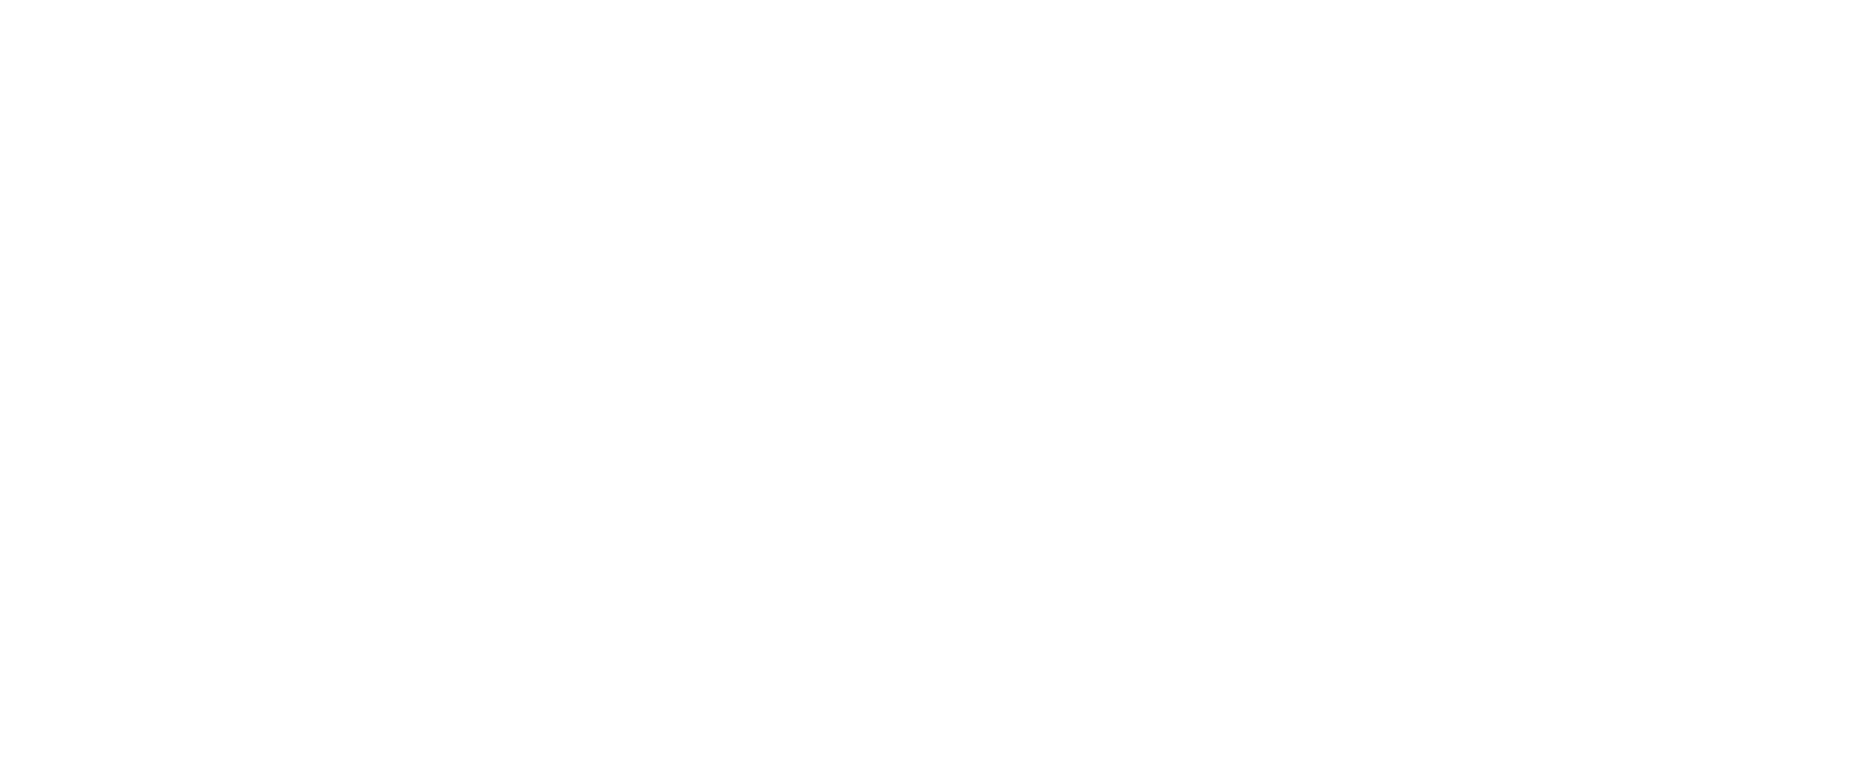 csgo-logo-large